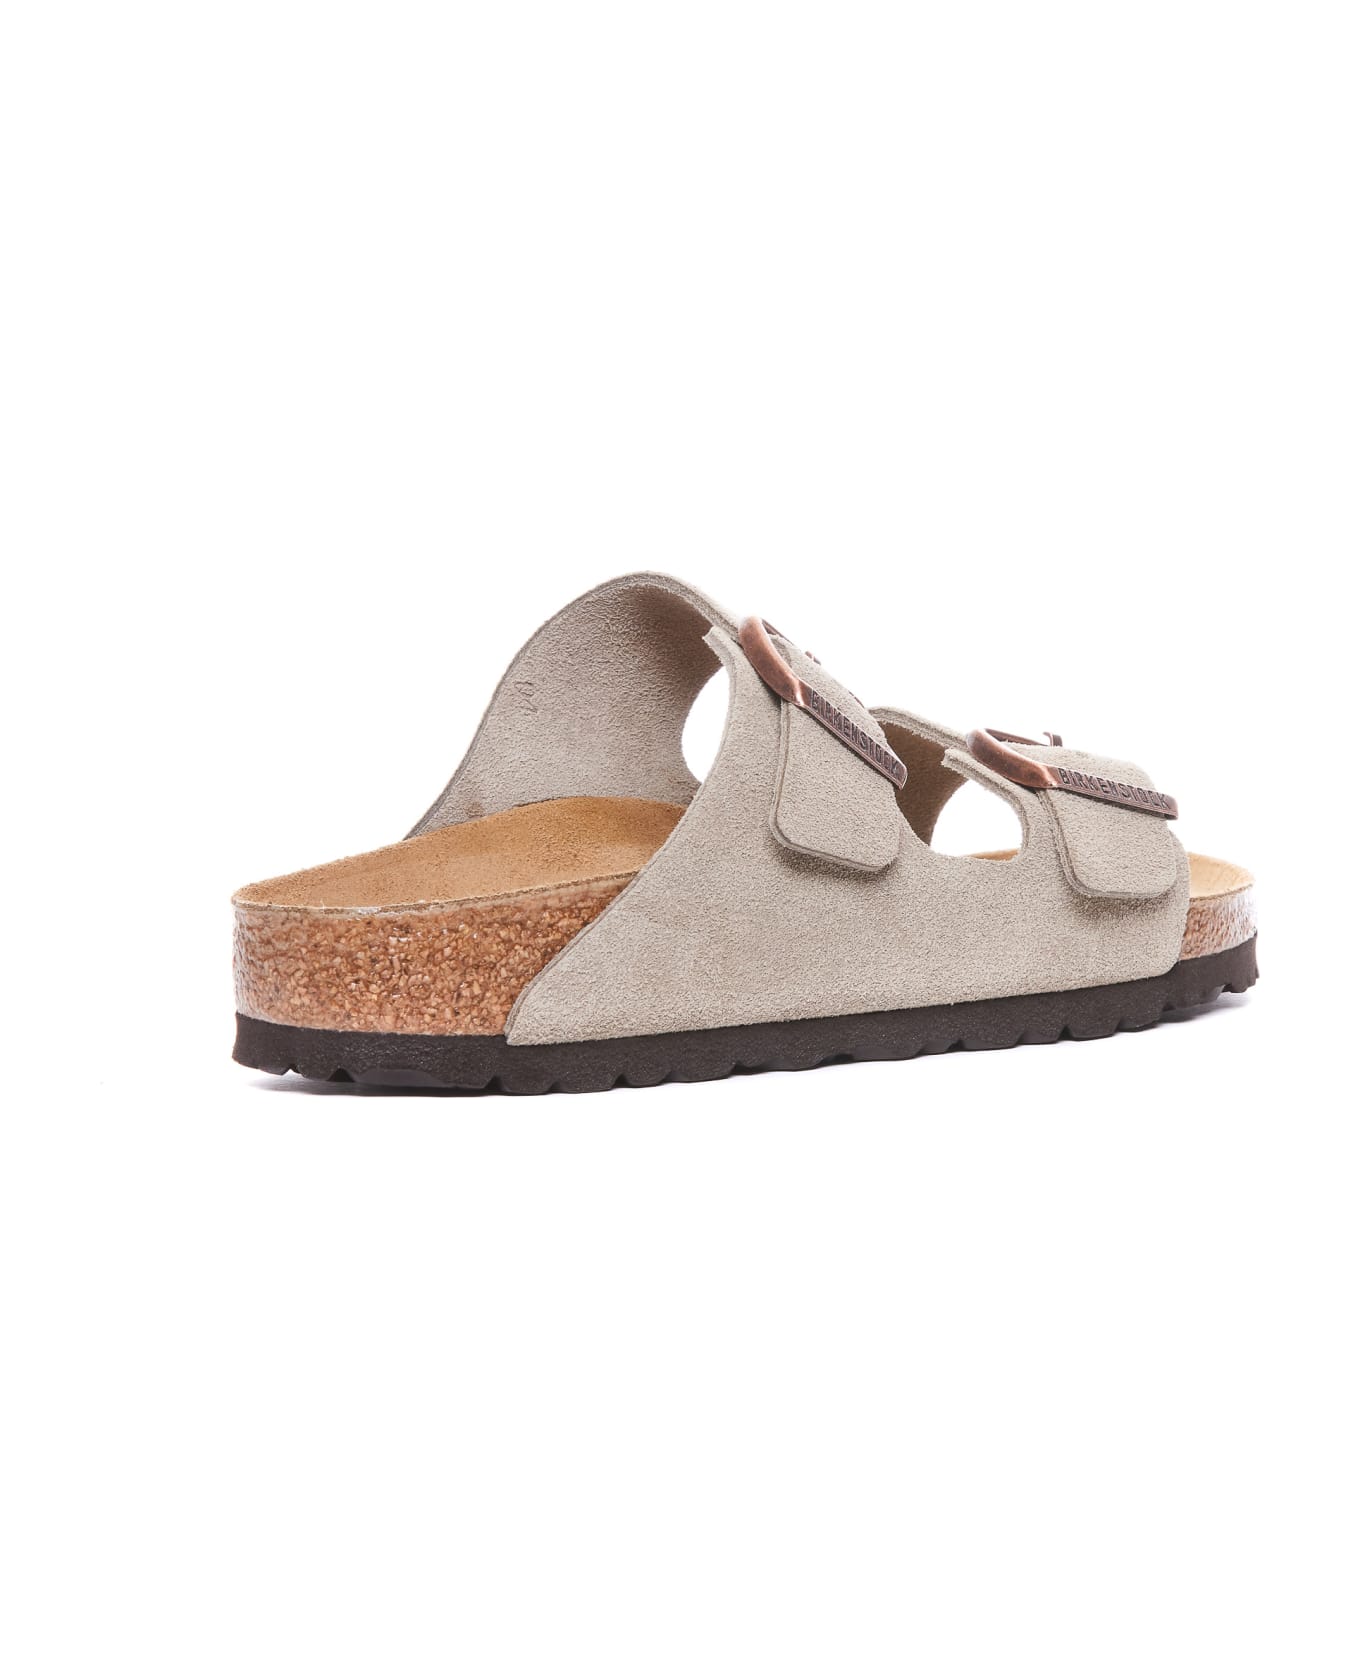 Birkenstock Arizona Sandals - Beige